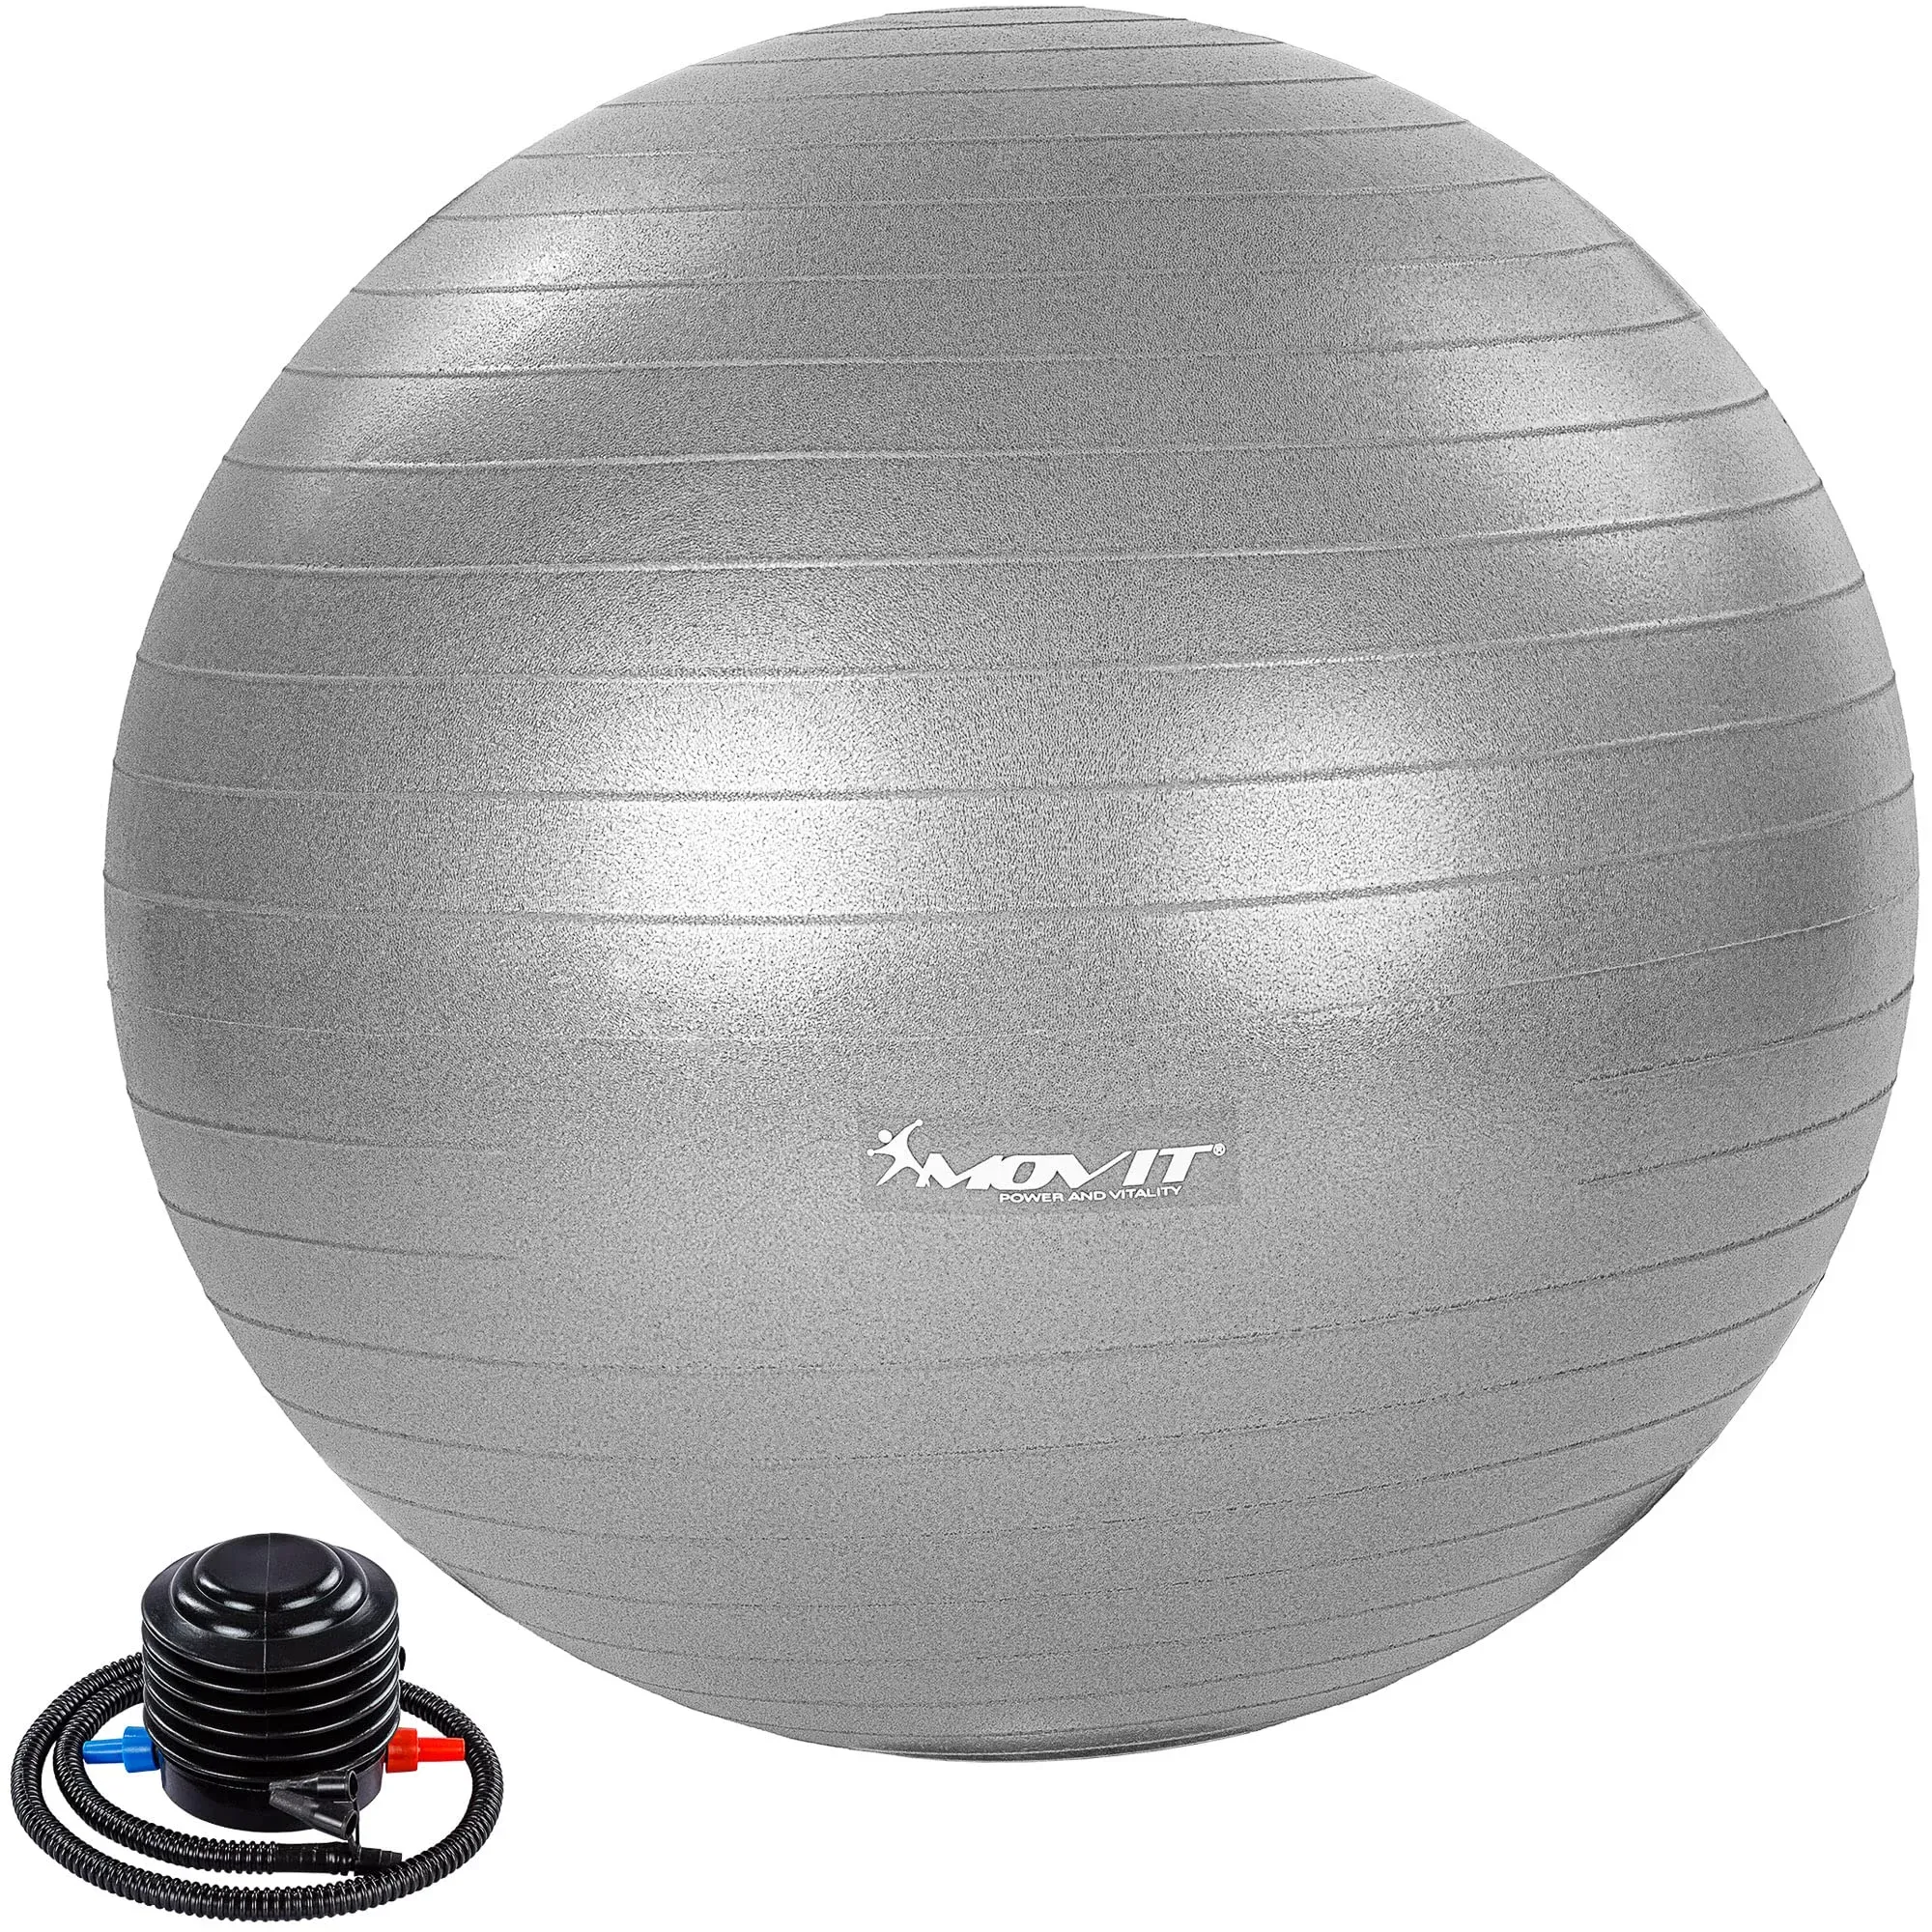 MOVIT® Gymnastikball »Dynamic Ball« inkl. Pumpe, 65 cm, Silber, Maximalbelastbarkeit bis 500kg, berstsicher, Fitness-Ball, Sitzball, Yogaball, Pilates-Ball, Balance